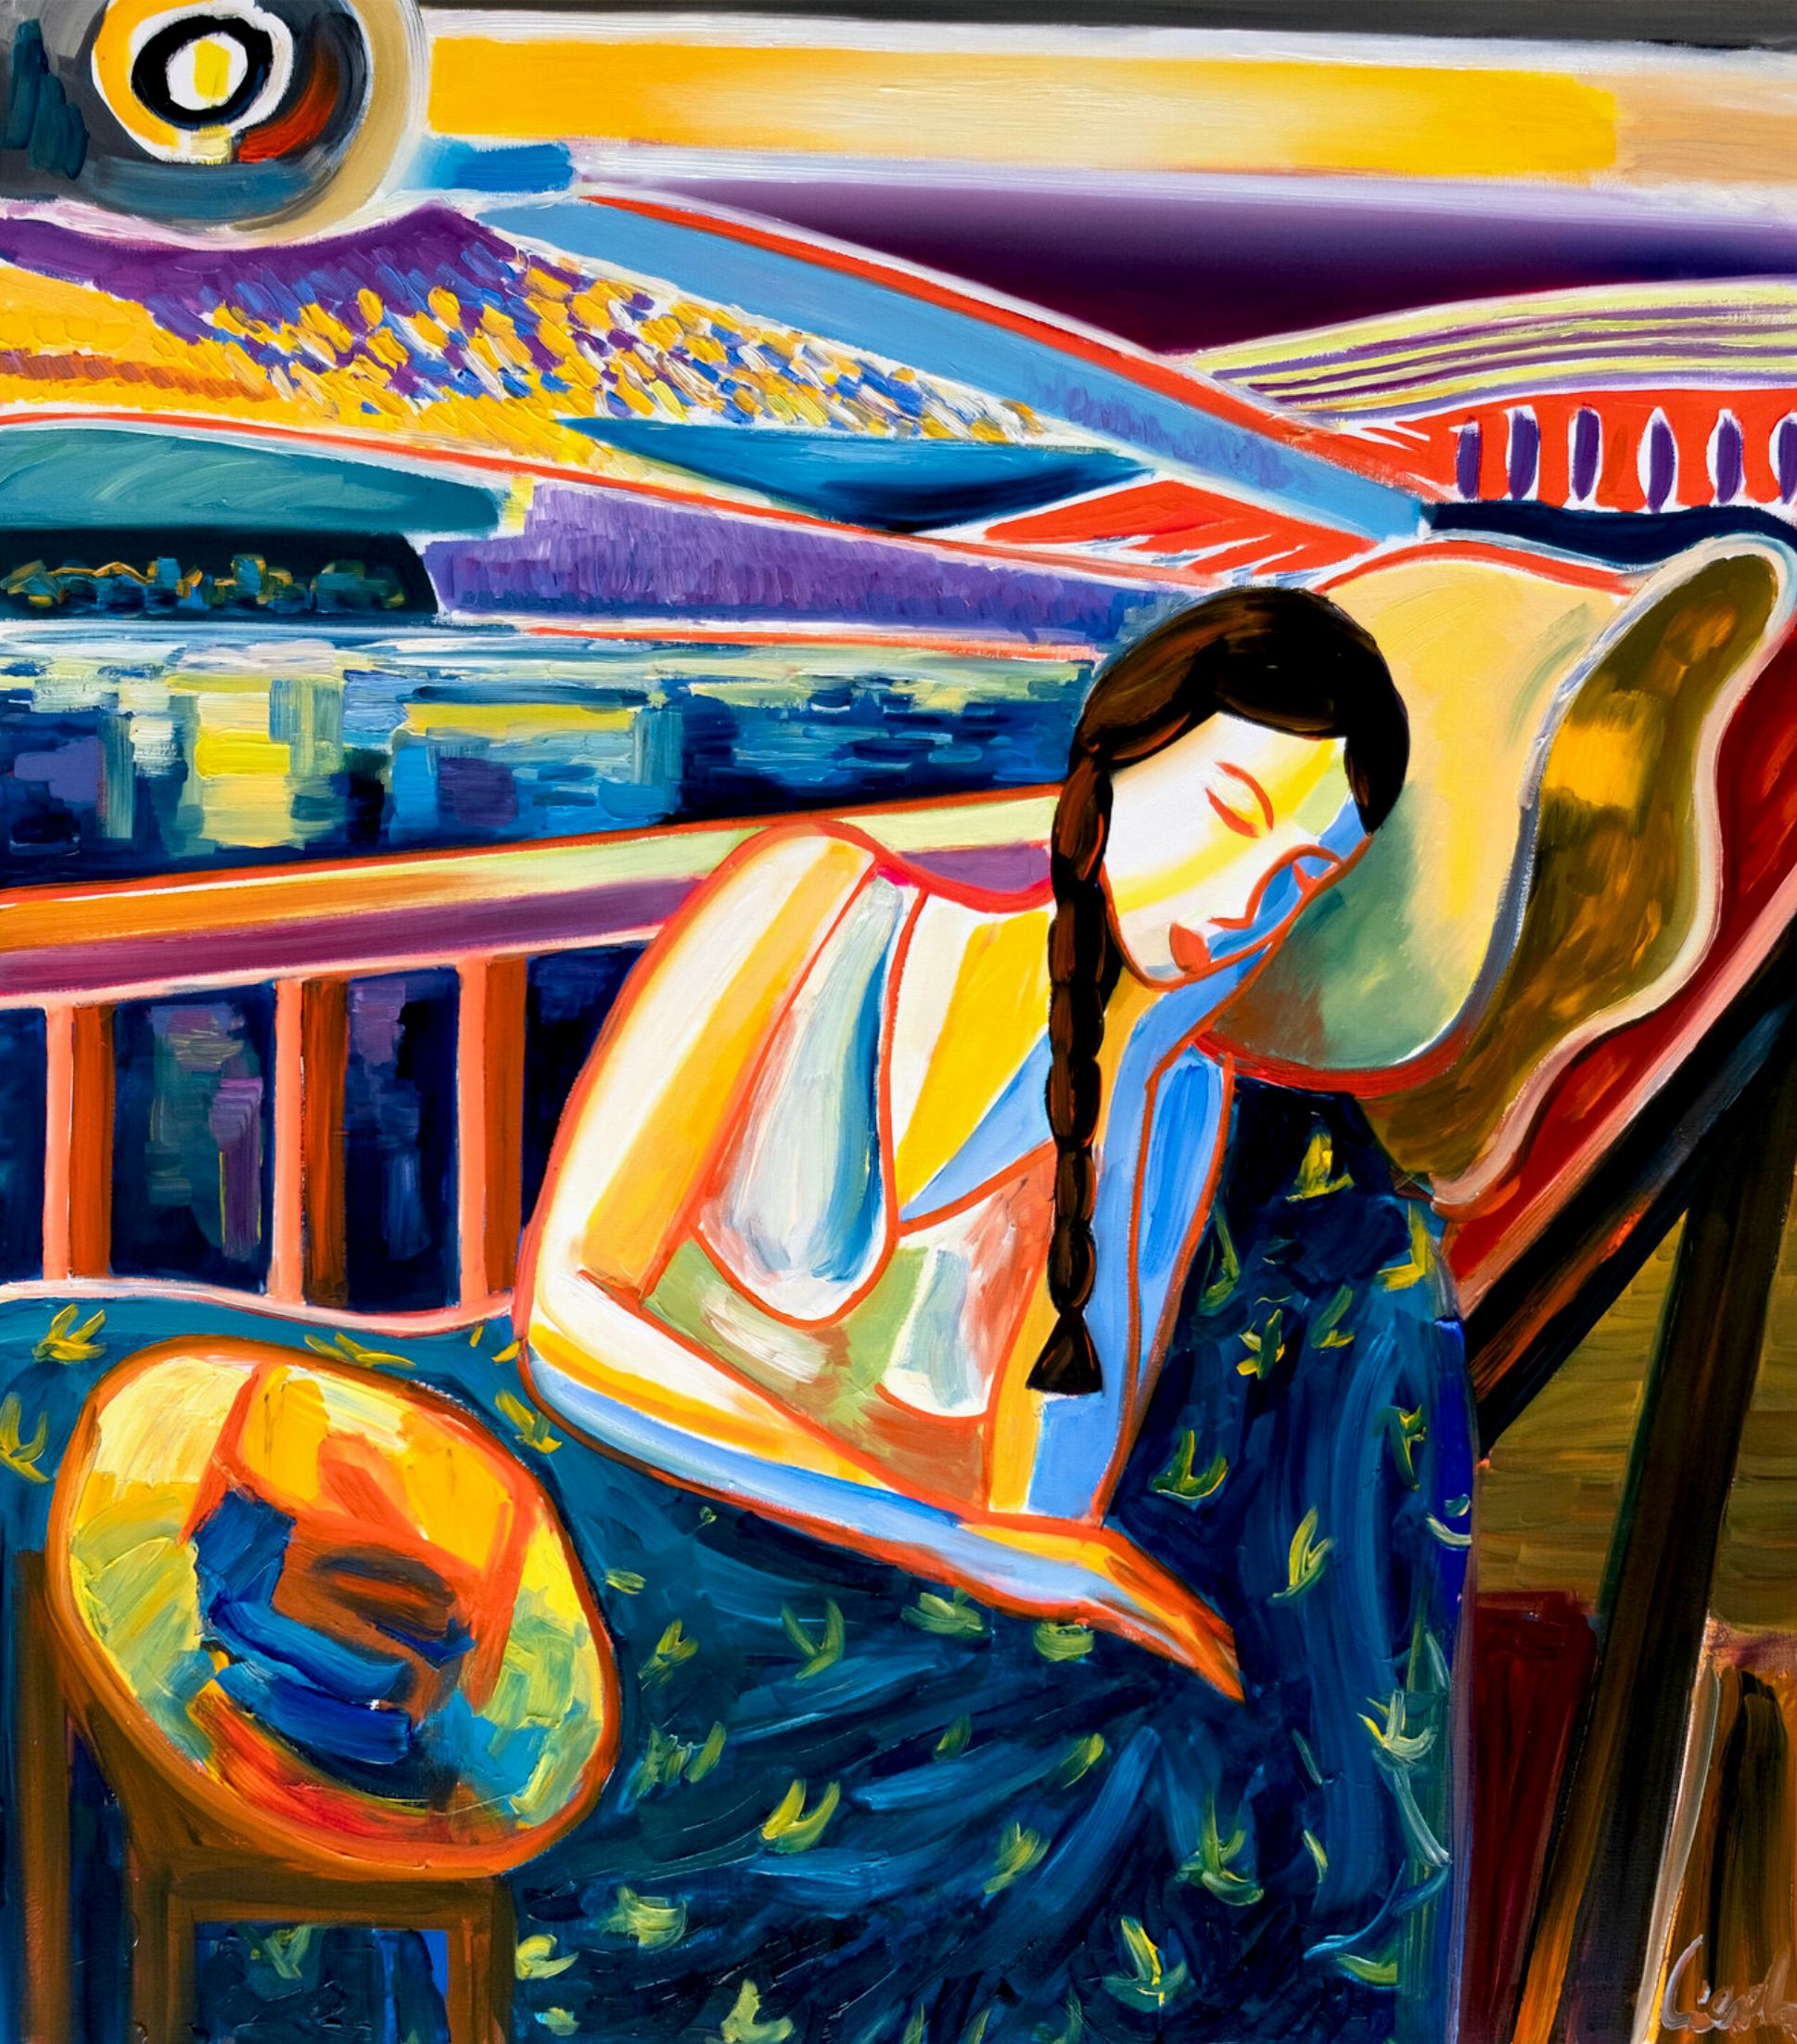 MECESLA Maciej Cieśla, "Niña dormida y paisaje italiano", Pintura abstracta de una joven dormida con agresivas combinaciones de colores frente a un paisaje italiano.